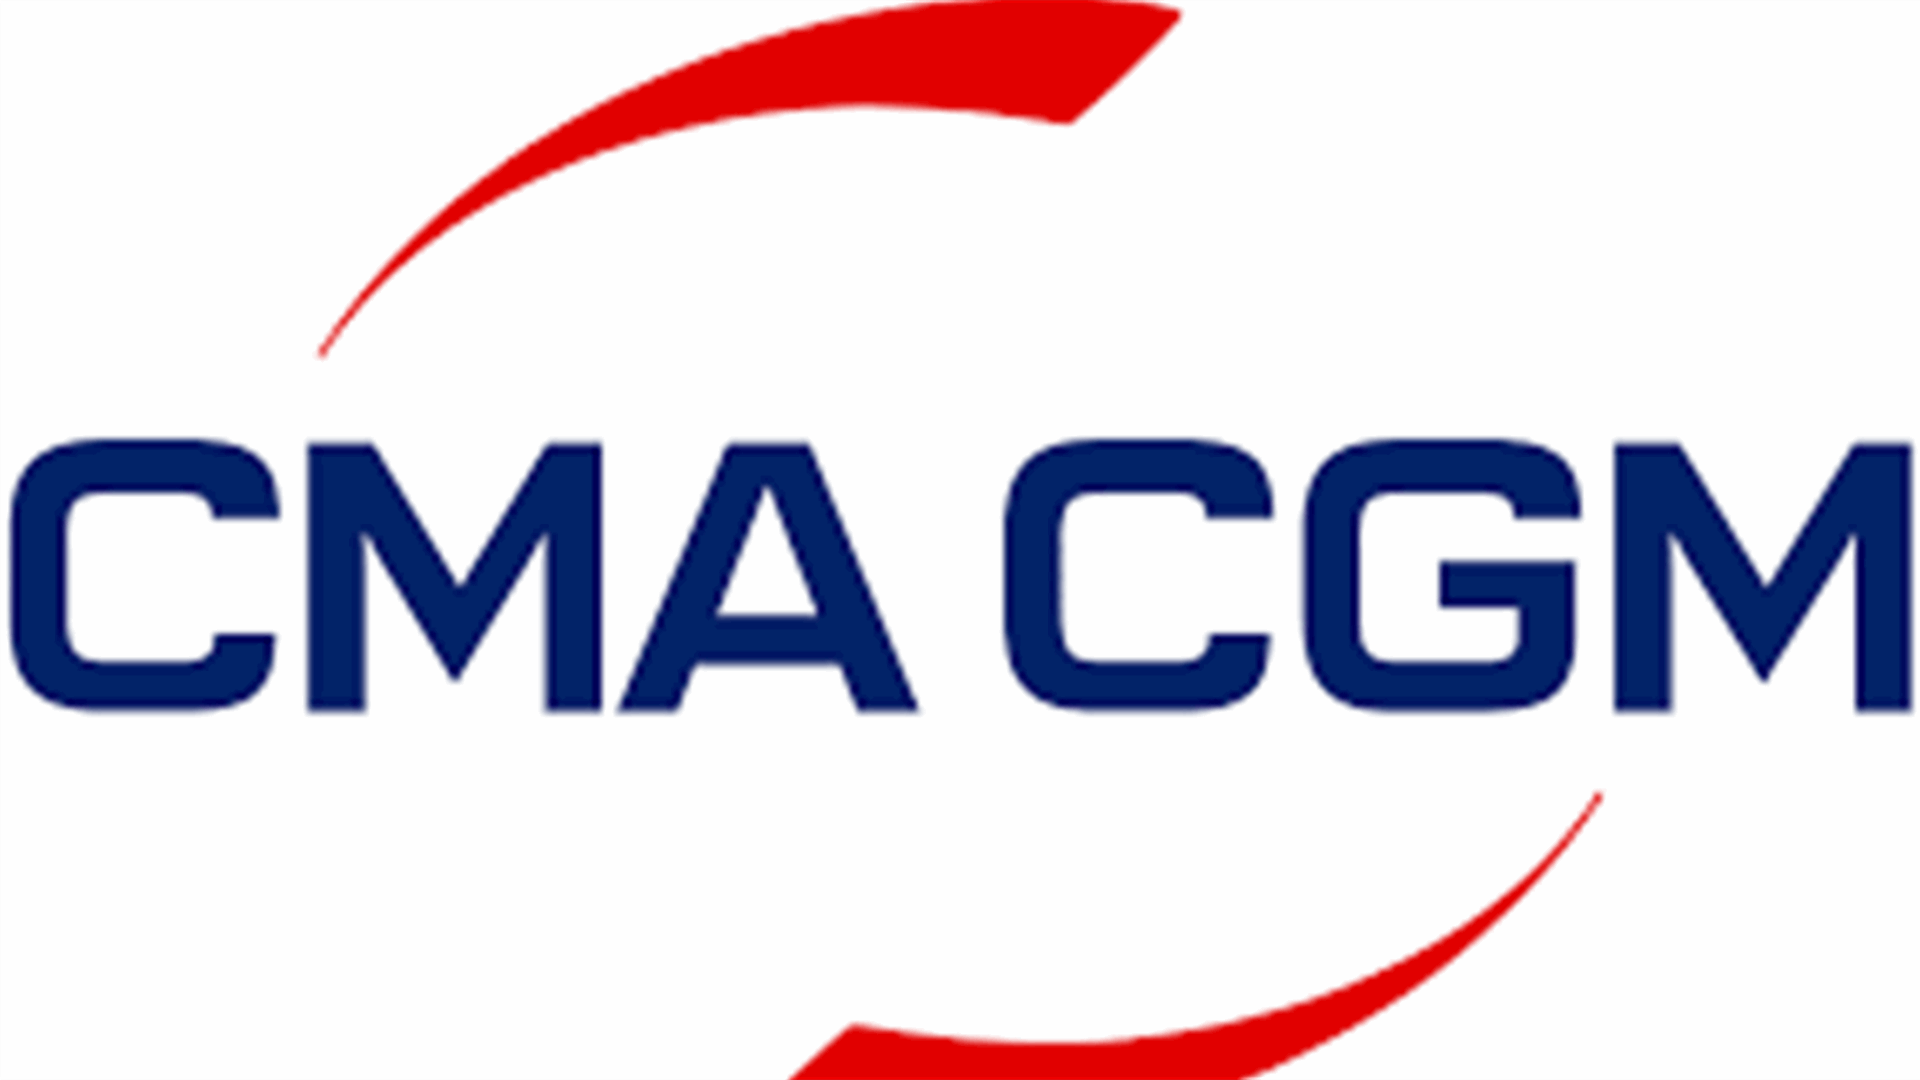 مجموعة CMA CGM قررت عدم تقديم عرض للمزايدة الخاصة بتشغيل القطاع البريدي في لبنان